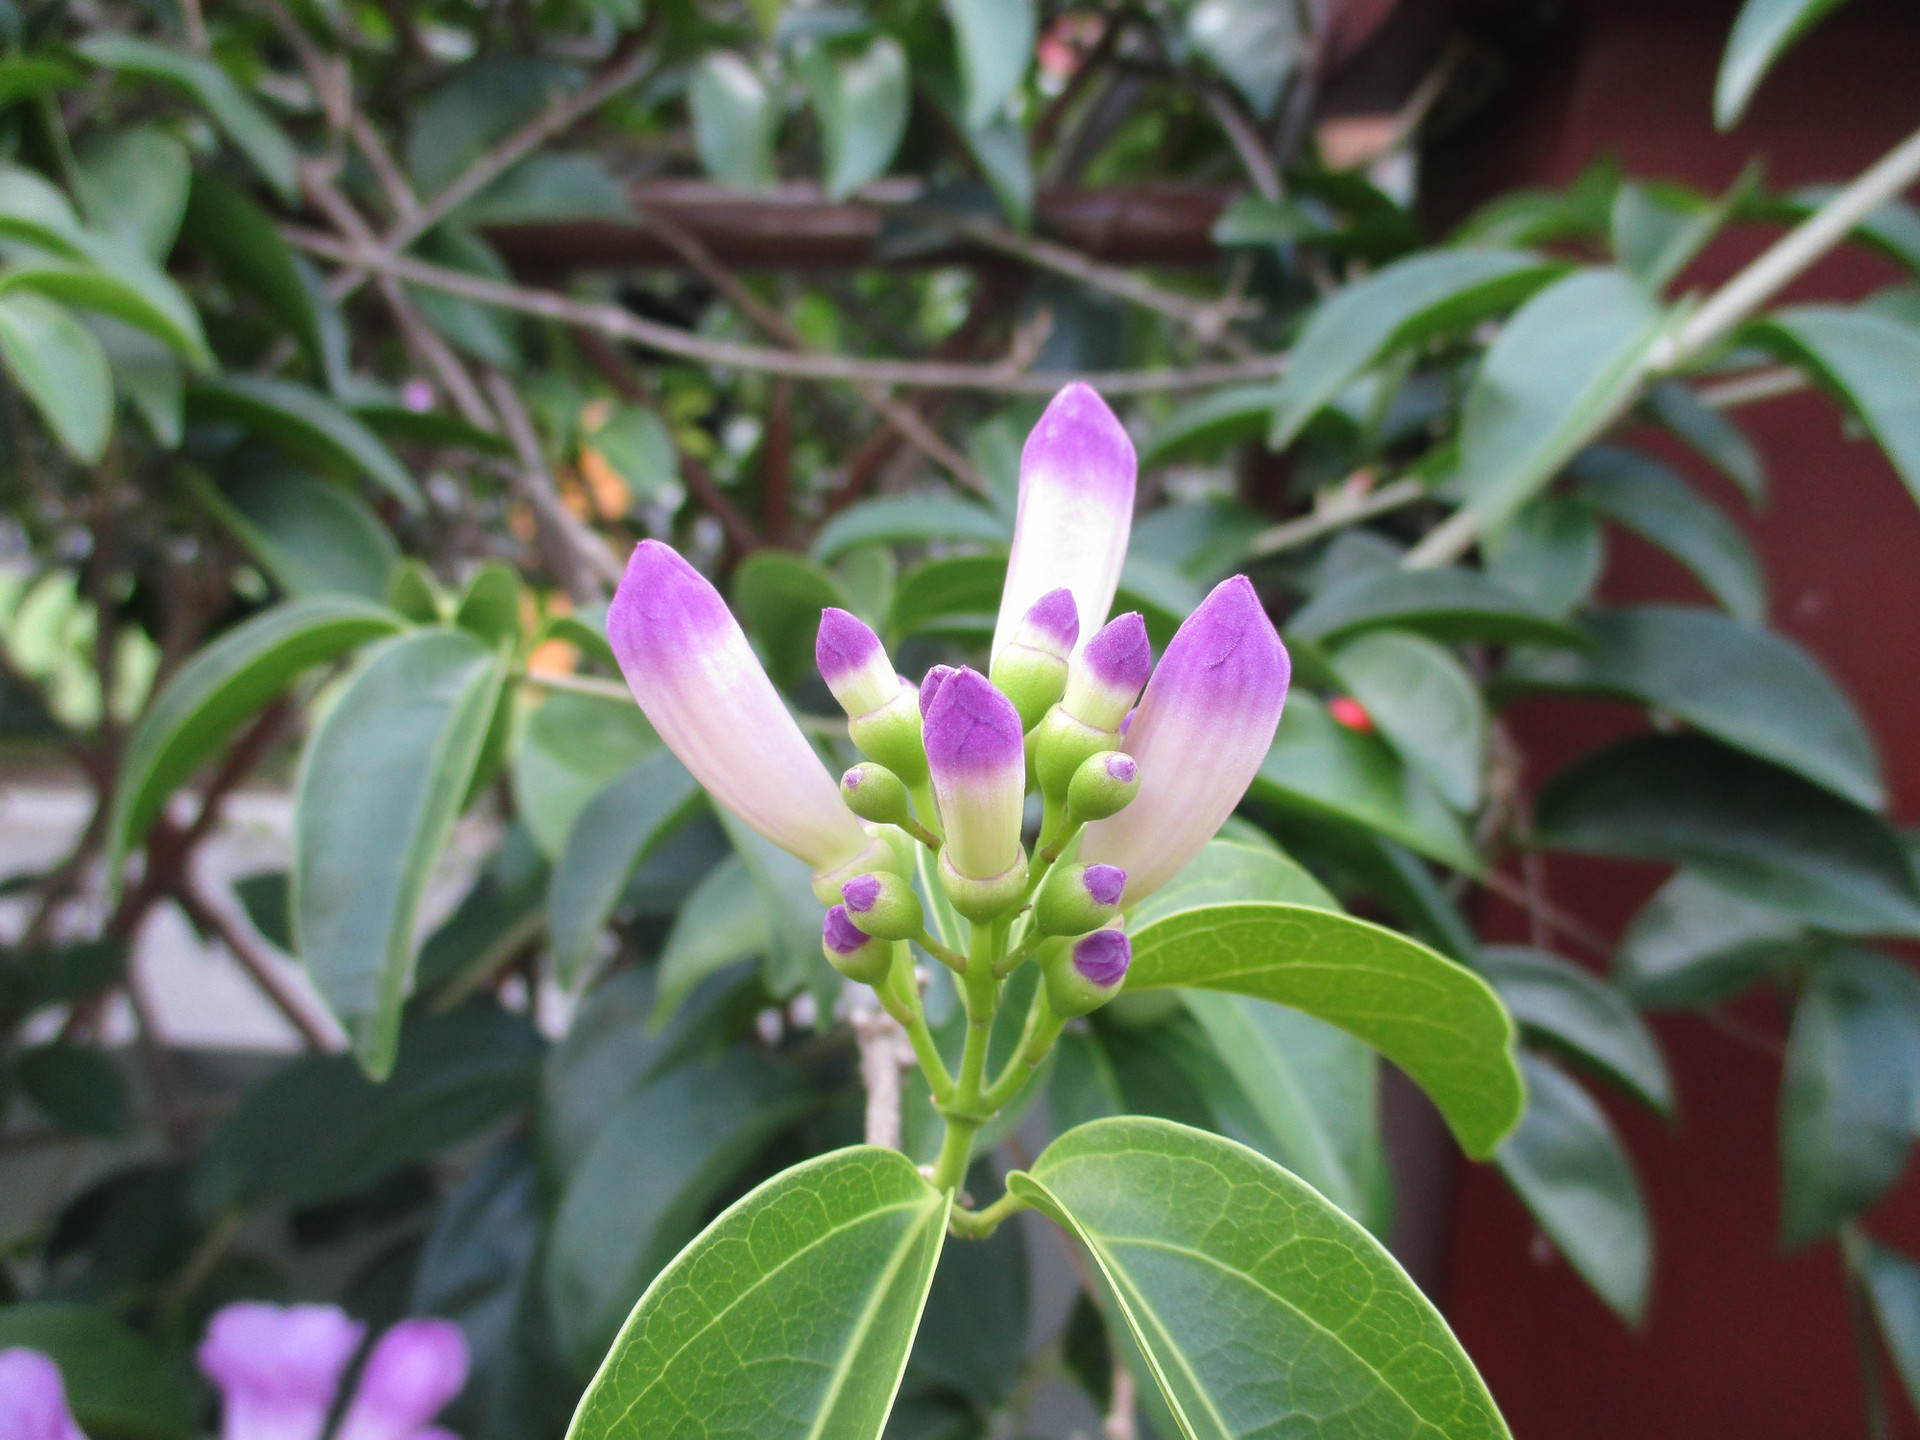 Cây hoa lan tỏi là một loại cây đặc biệt, dạng dây leo và có mùi giống như mùi tỏi. Cây lan tỏi vừa là loại cây cảnh dùng để trang trí nhà cửa, vừa là nguyên liệu sử dụng làm thuốc trong Đông y. 